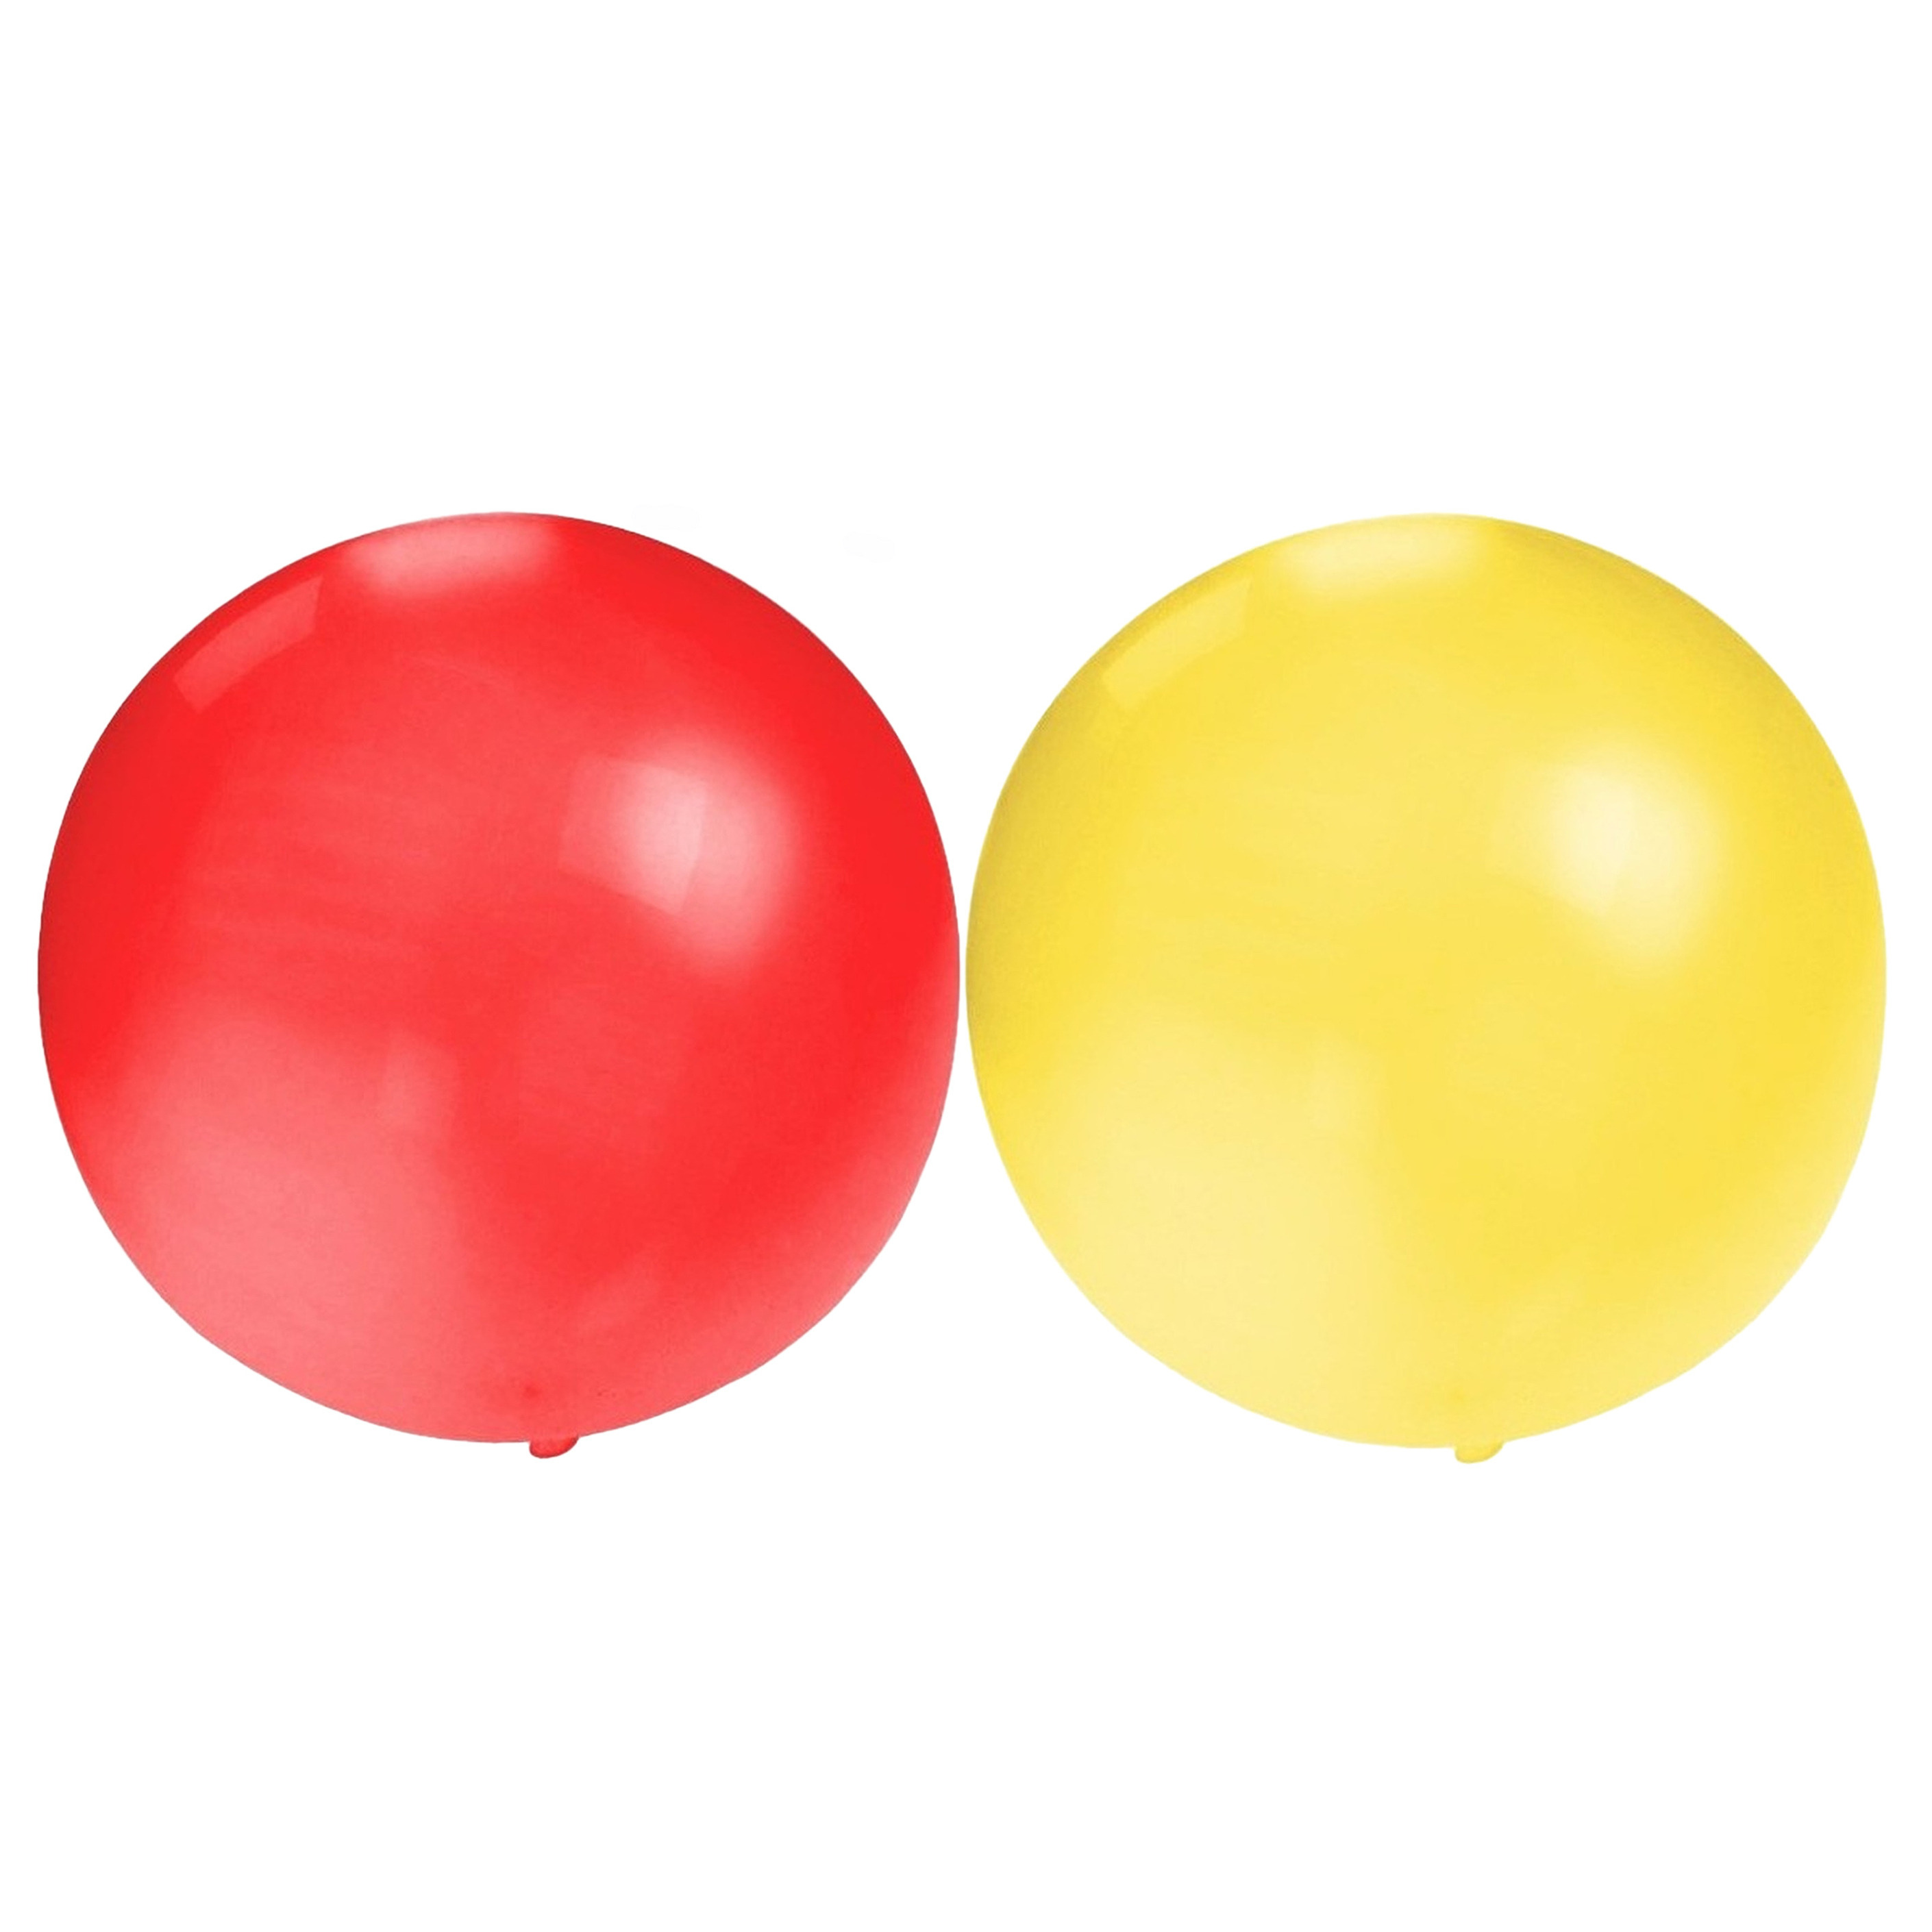 Bellatio Decorations 10x groot formaat ballonnen rood en geel met diameter 60 cm